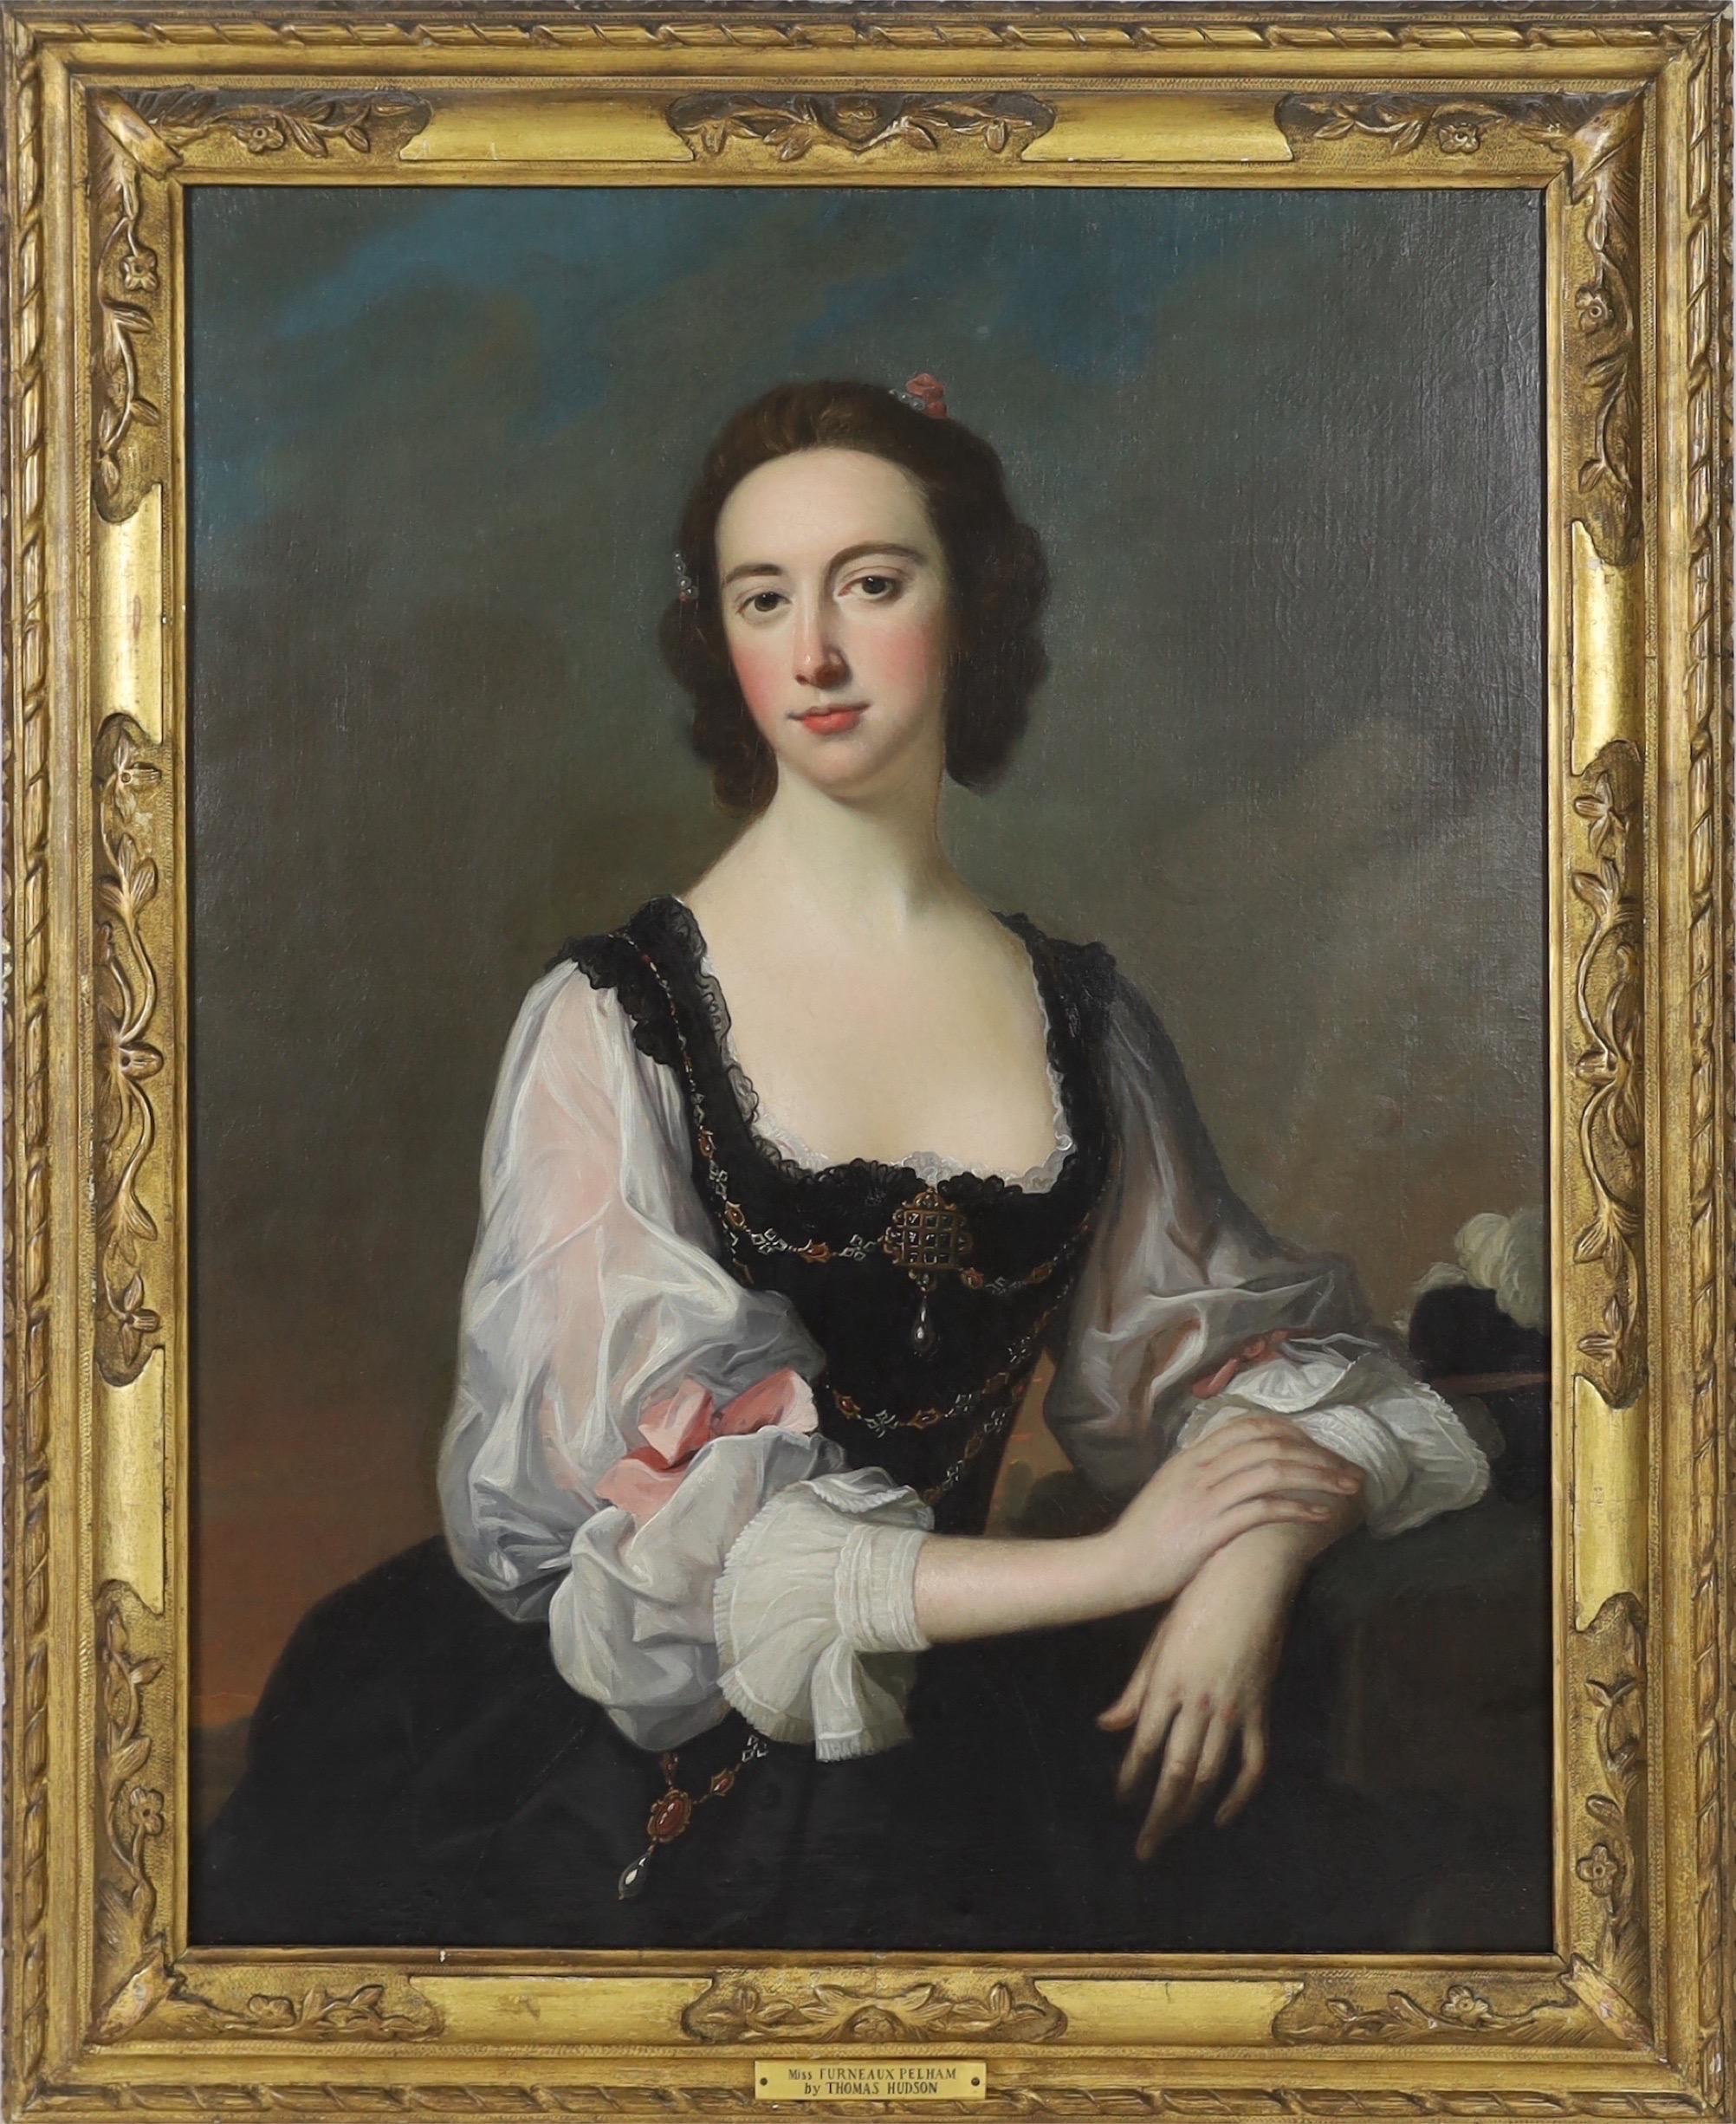 Thomas Hudson Portrait Painting - 18th century portrait of Miss Furneaux-Pelham